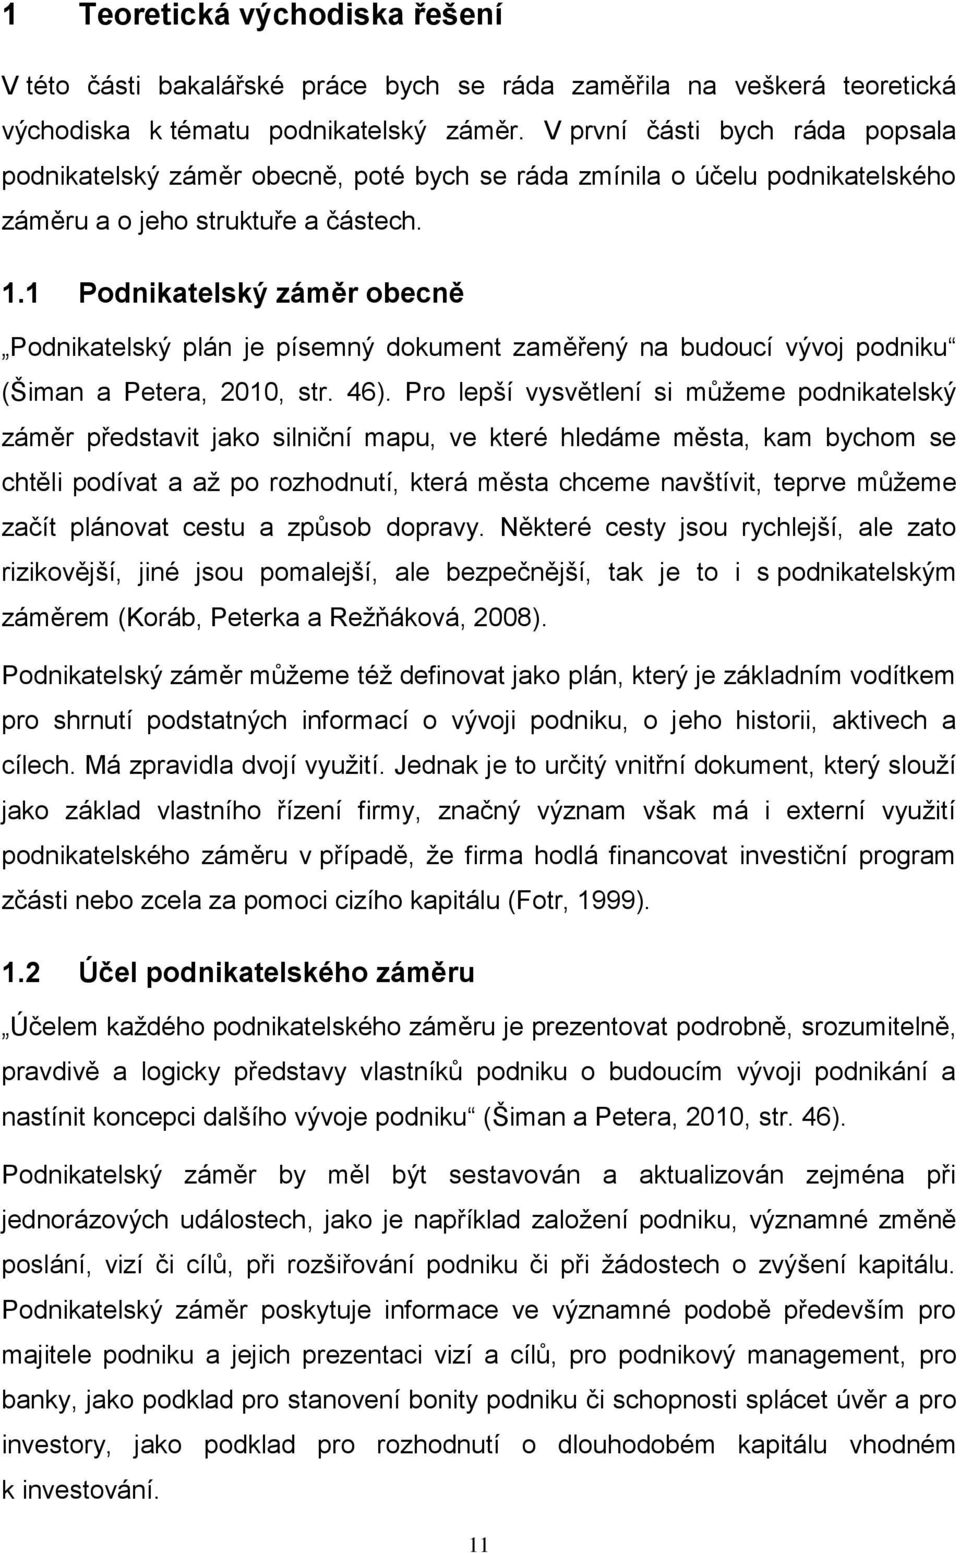 1 Podnikatelský záměr obecně Podnikatelský plán je písemný dokument zaměřený na budoucí vývoj podniku (Šiman a Petera, 2010, str. 46).